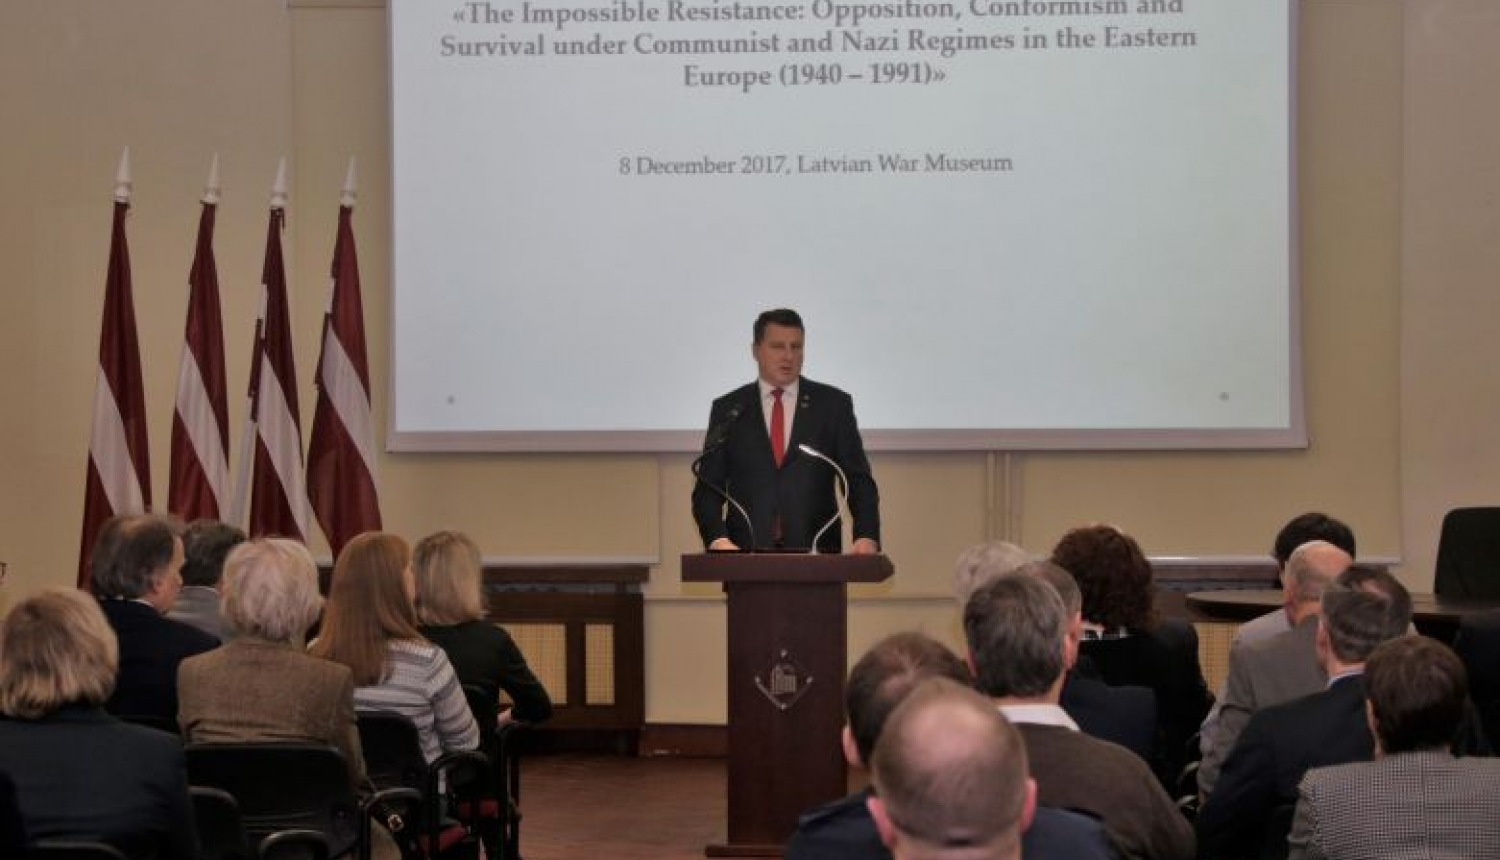 Valsts prezidents Latvijas Vēsturnieku komisijas starptautiskajā konferencē: jāizvērtē mūsu pagātne, lai veidotu labāku nākotni